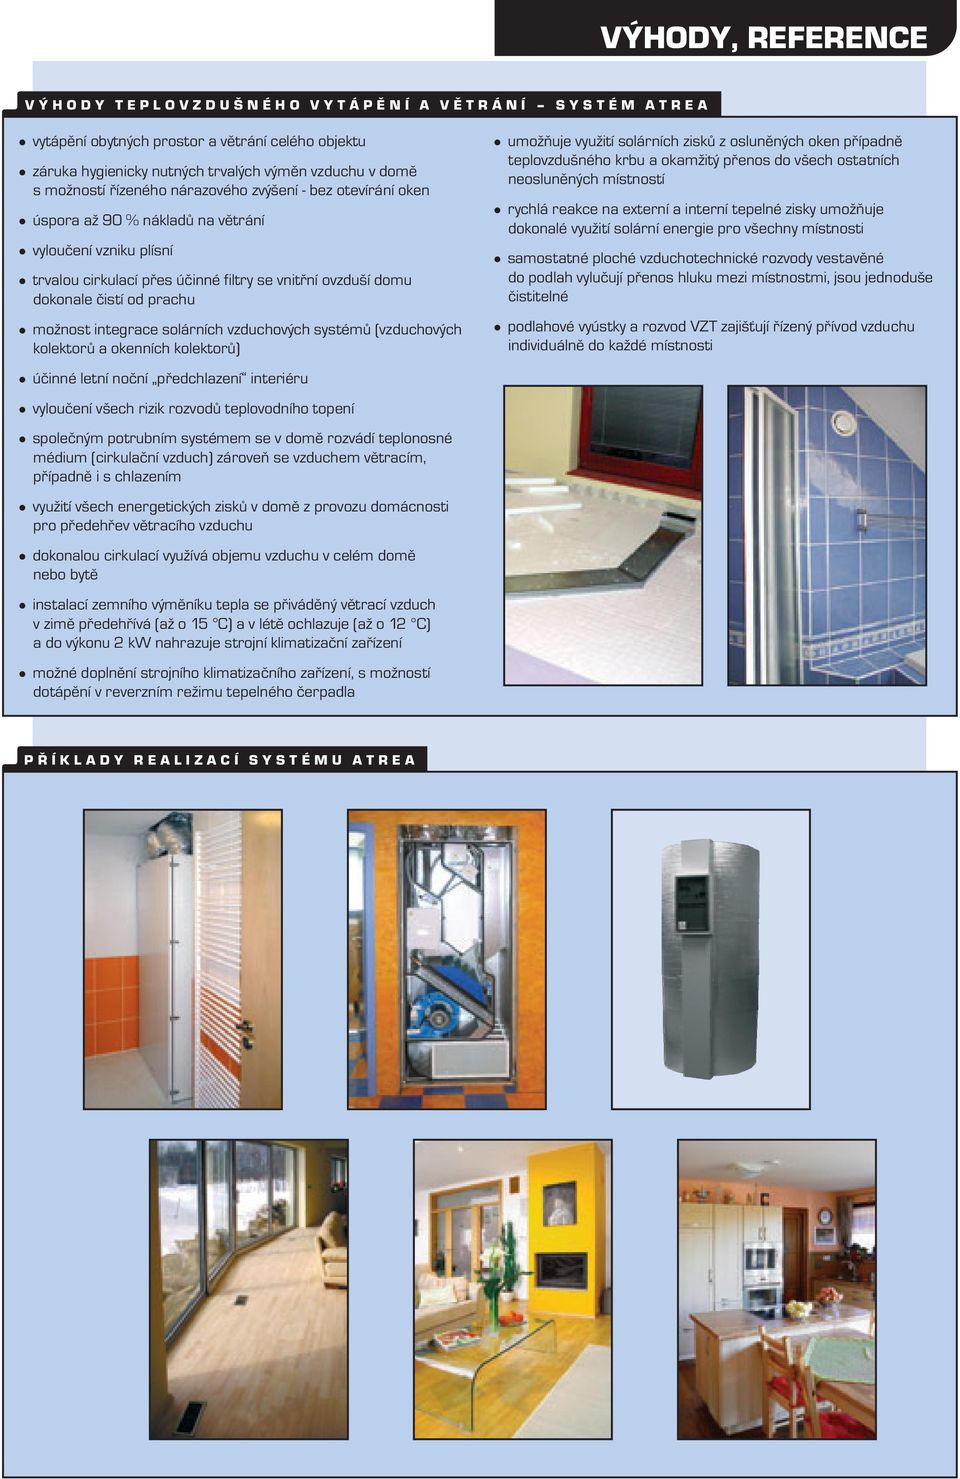 solárníh vzduhovýh systémů (vzduhovýh kolektorů a okenníh kolektorů) účinné letní noční předhlazení interiéru vyloučení všeh rizik rozvodů teplovodního topení společným potrubním systémem se v domě